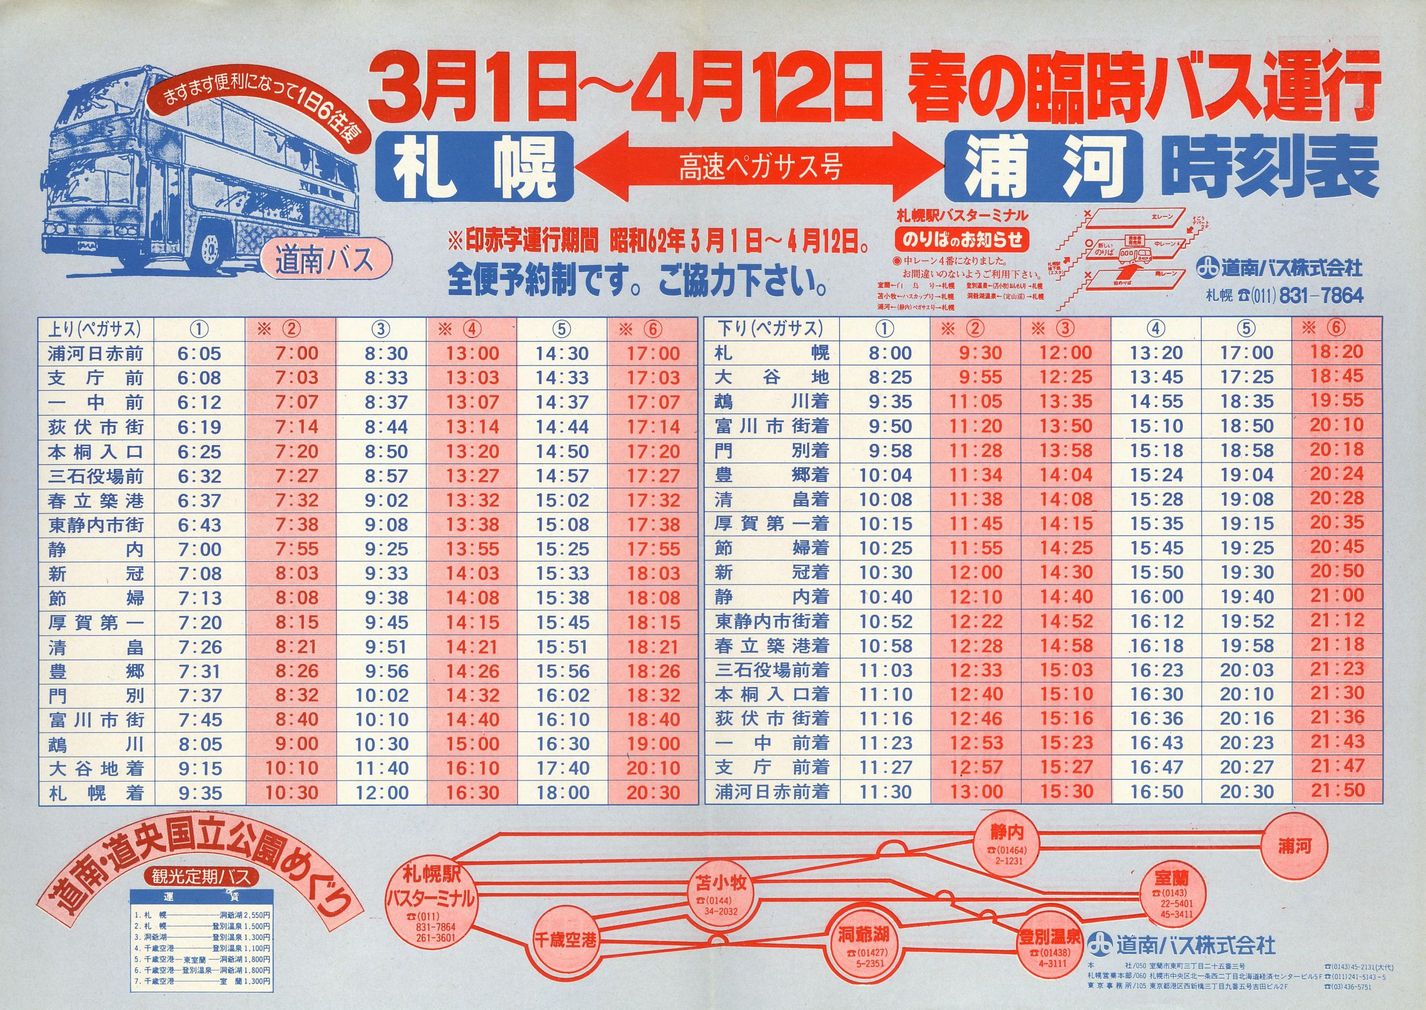 1987-03-01改正_道南バス_高速ペガサス号時刻表